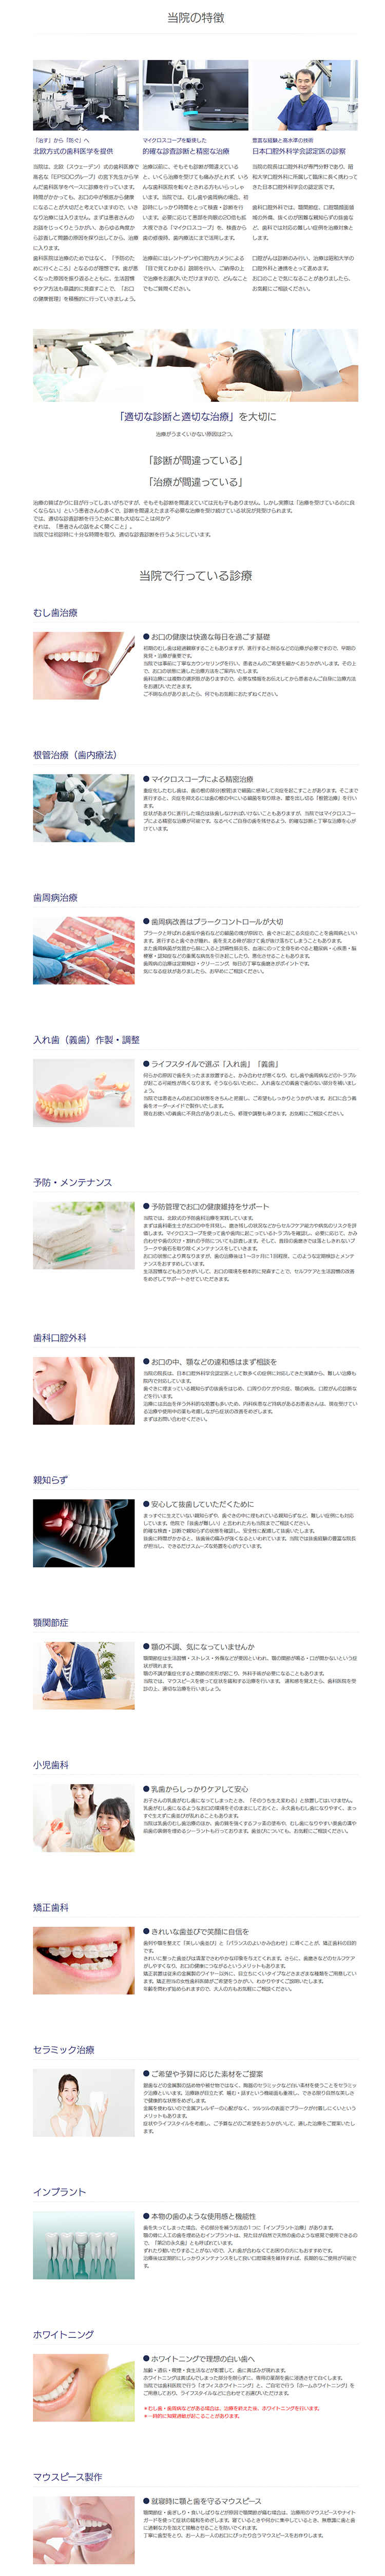 新日本歯科のお知らせ内容